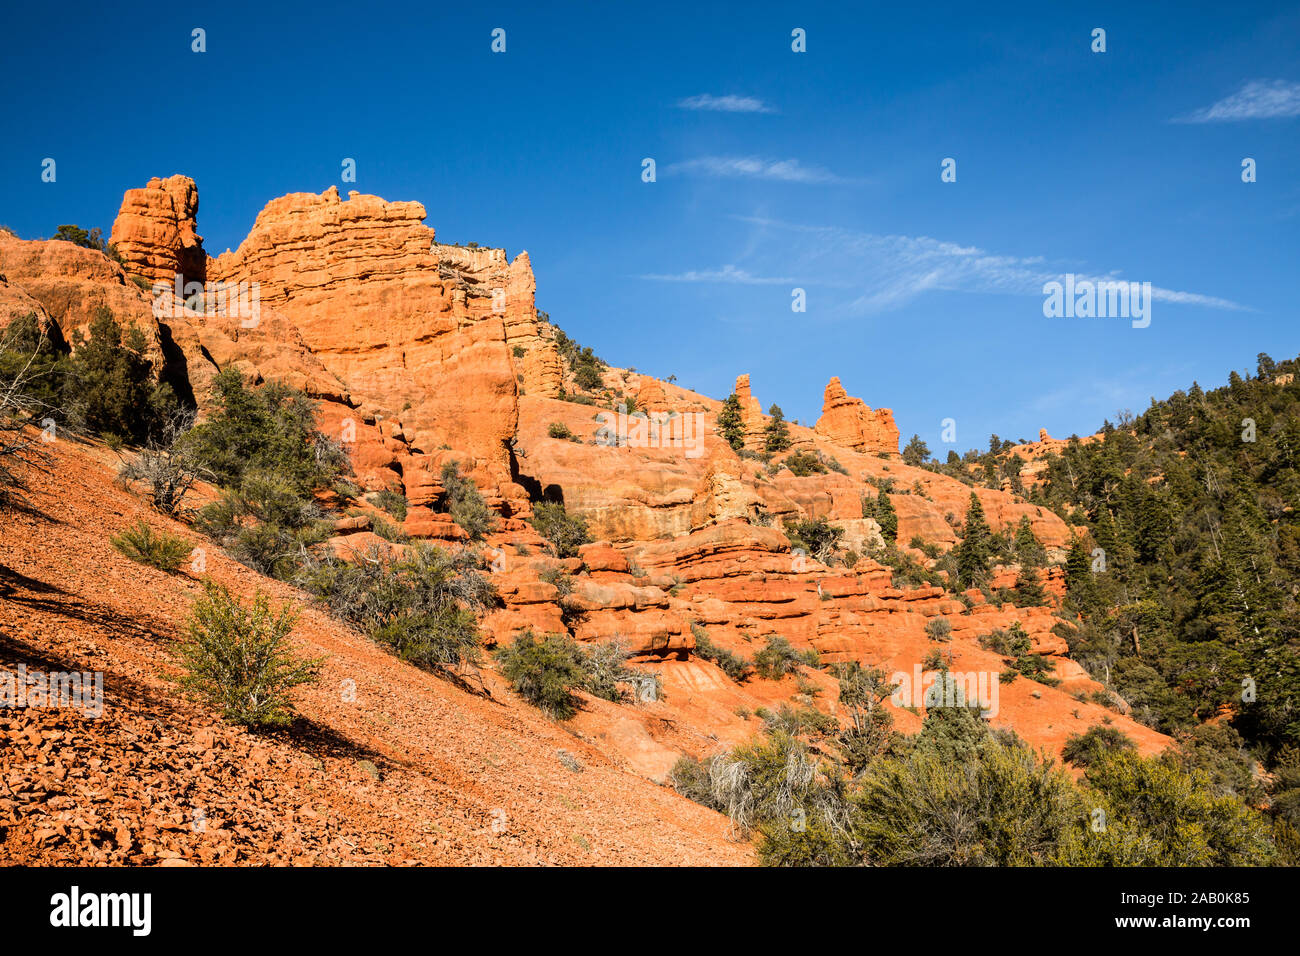 Cedar Canyon, qui part de Cedar City, Utah, chefs dans le désert et conduit à de nombreux canyons de roche rouge comme celui-ci. Banque D'Images